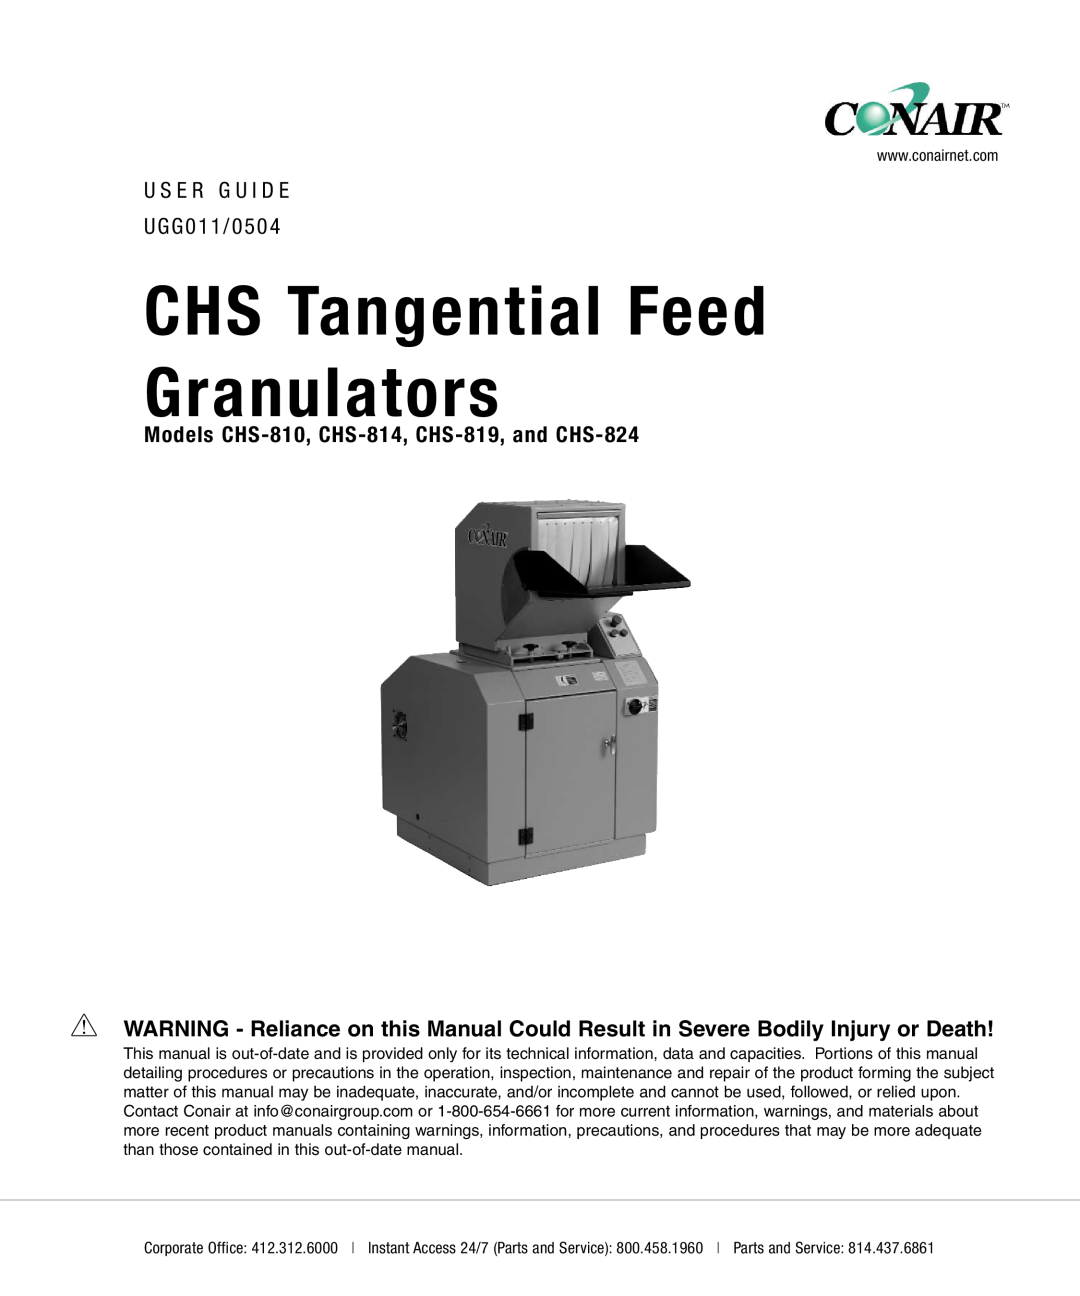 Conair manual CHS Tangential Feed Granulators, Models CHS-810, CHS-814, CHS-819, and CHS-824 